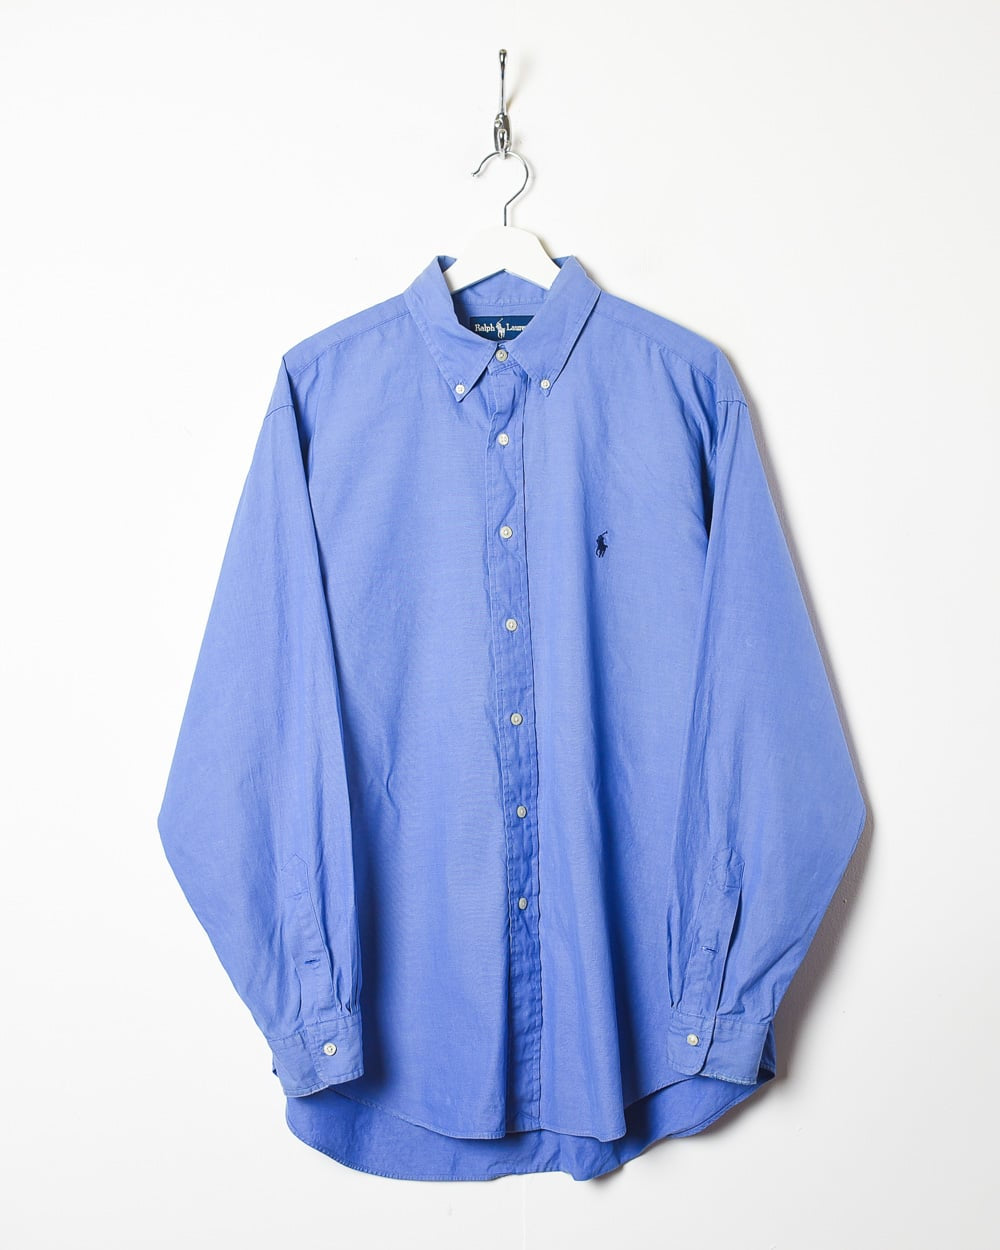 Blue Polo Ralph Lauren Shirt - X-Large